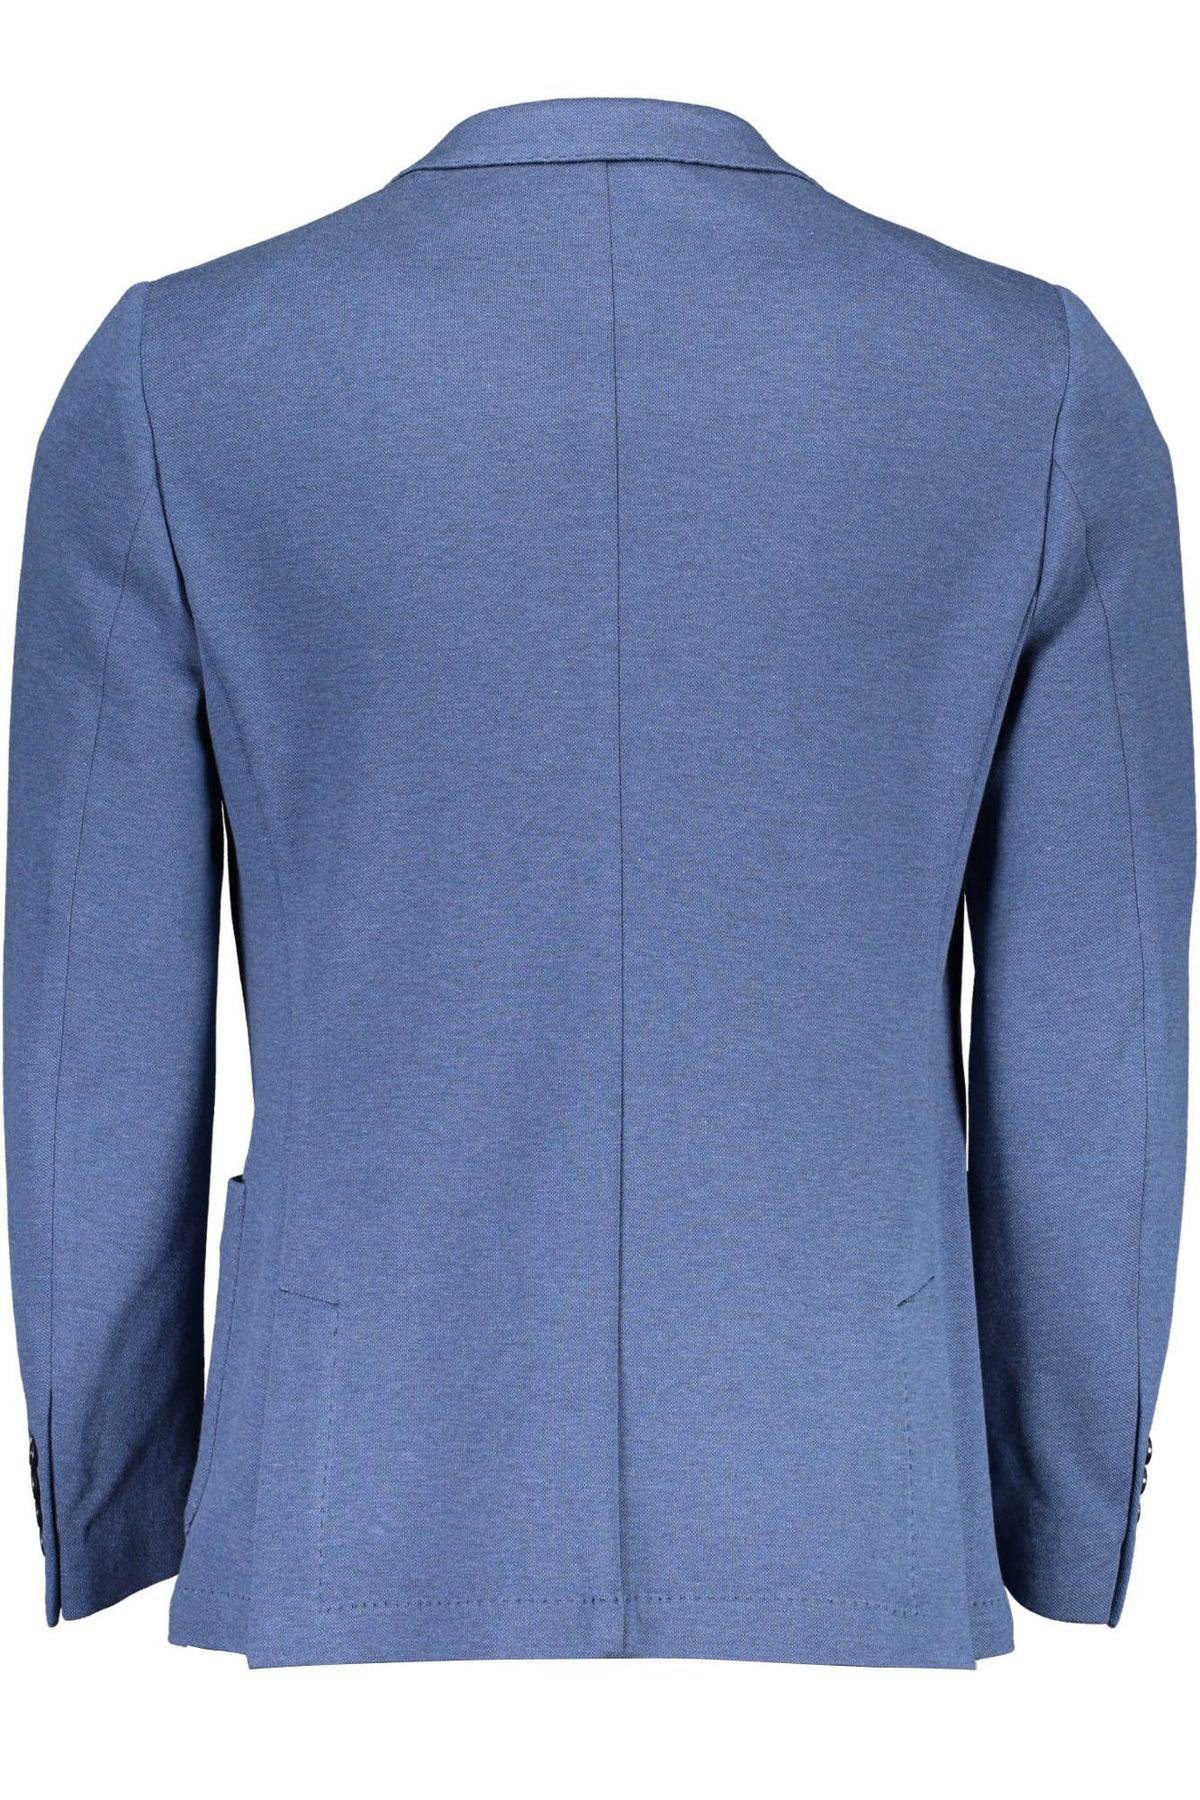 Gant Elegante blaue Jacke aus Baumwollmischung